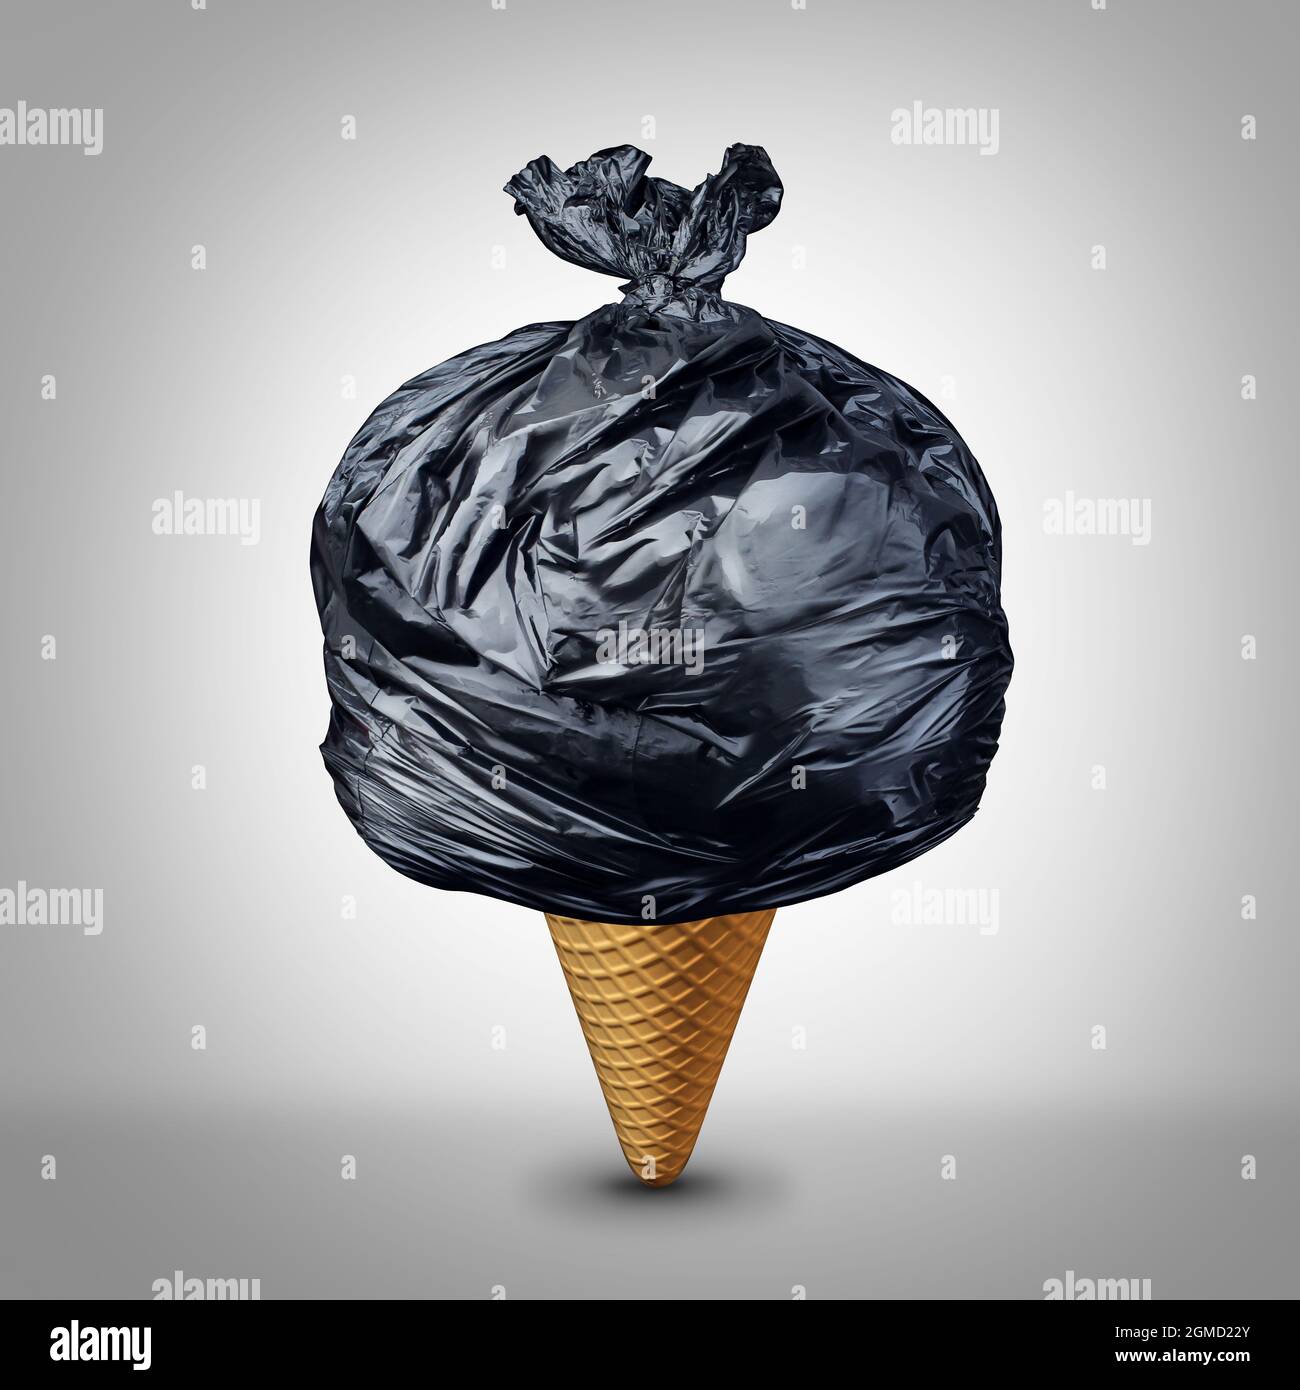 Mangiare cibo spazzatura e povero concetto di nutrizione come un gelato o cono di icecream con un sacchetto nero di plastica dei rifiuti come metafora di nutrizione per un male. Foto Stock